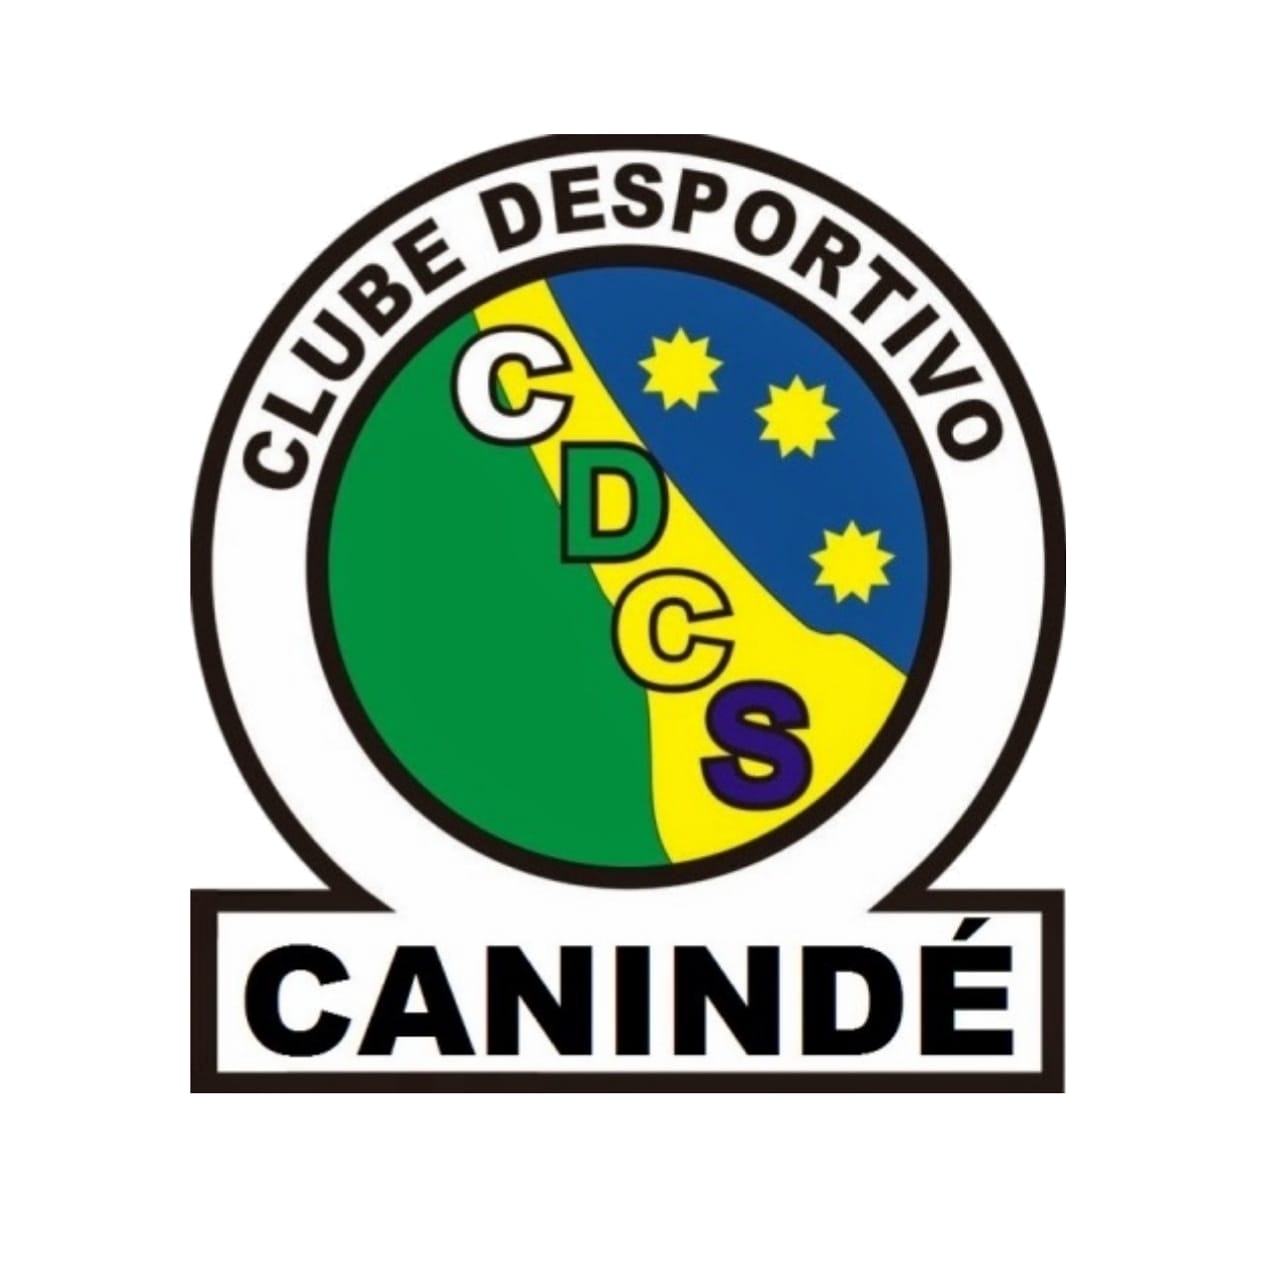 Canindé